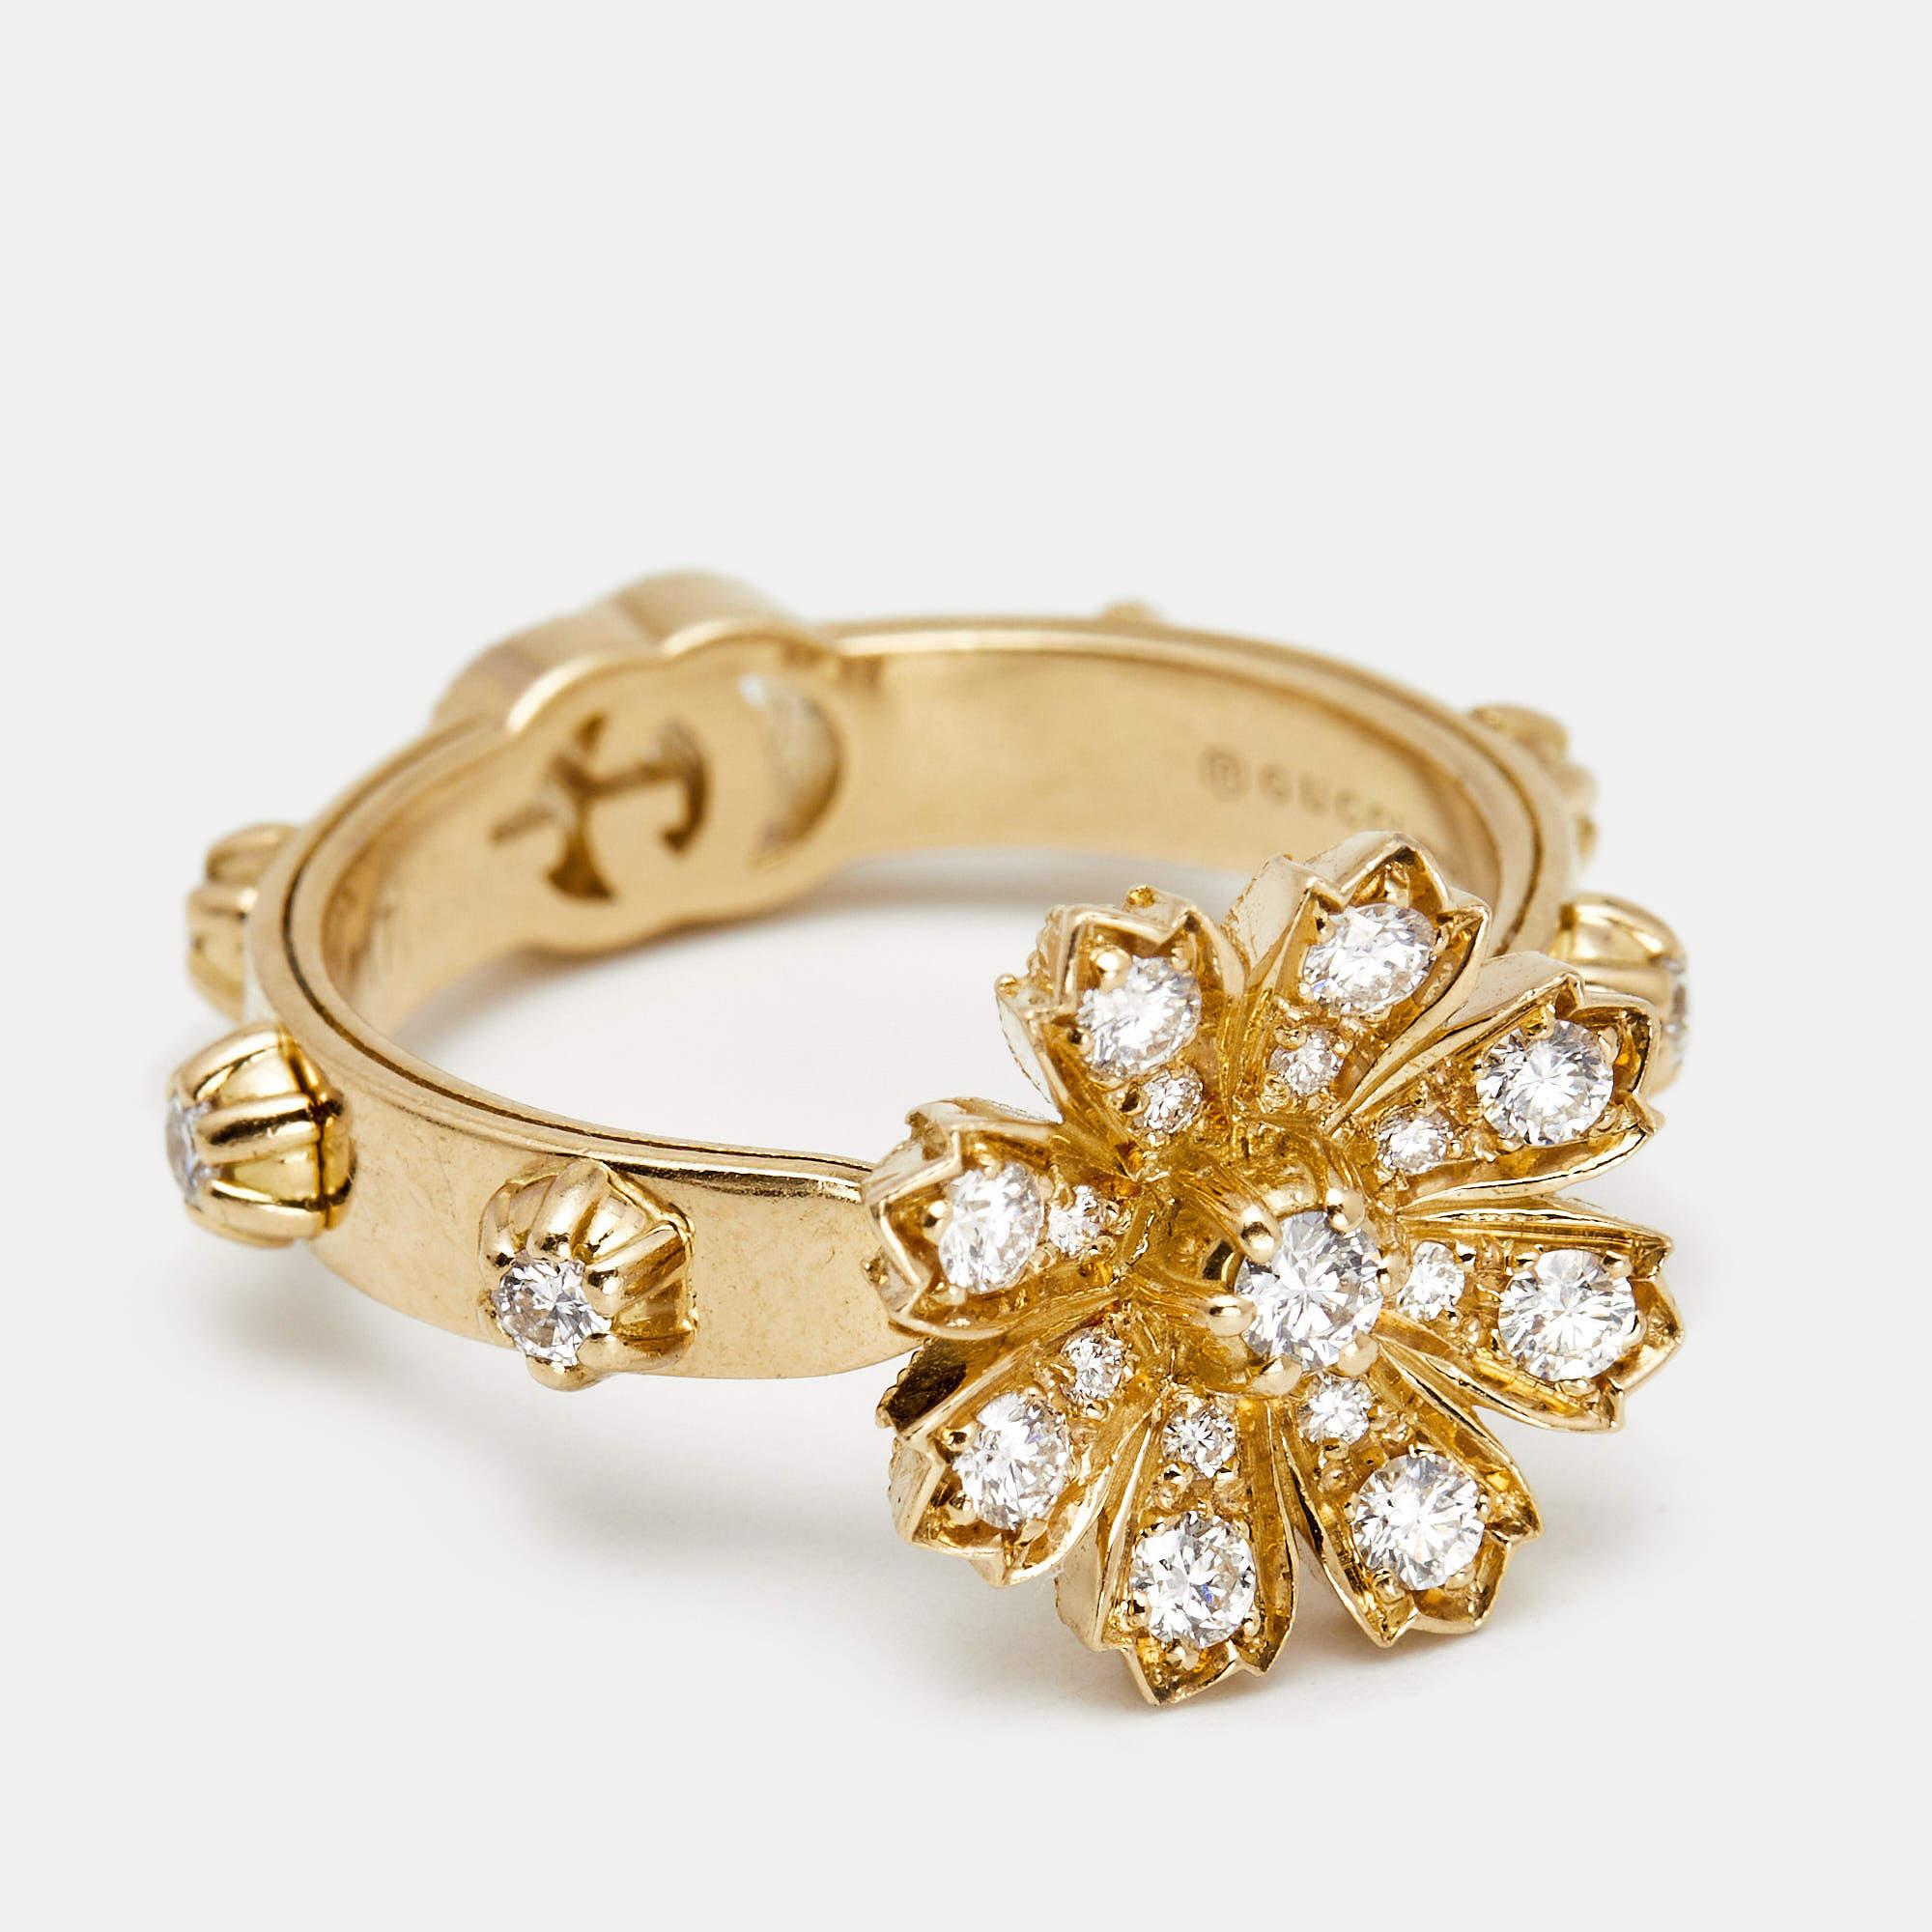 Uncut Gucci Flora Diamonds 18k Yellow Gold Ring Size 57